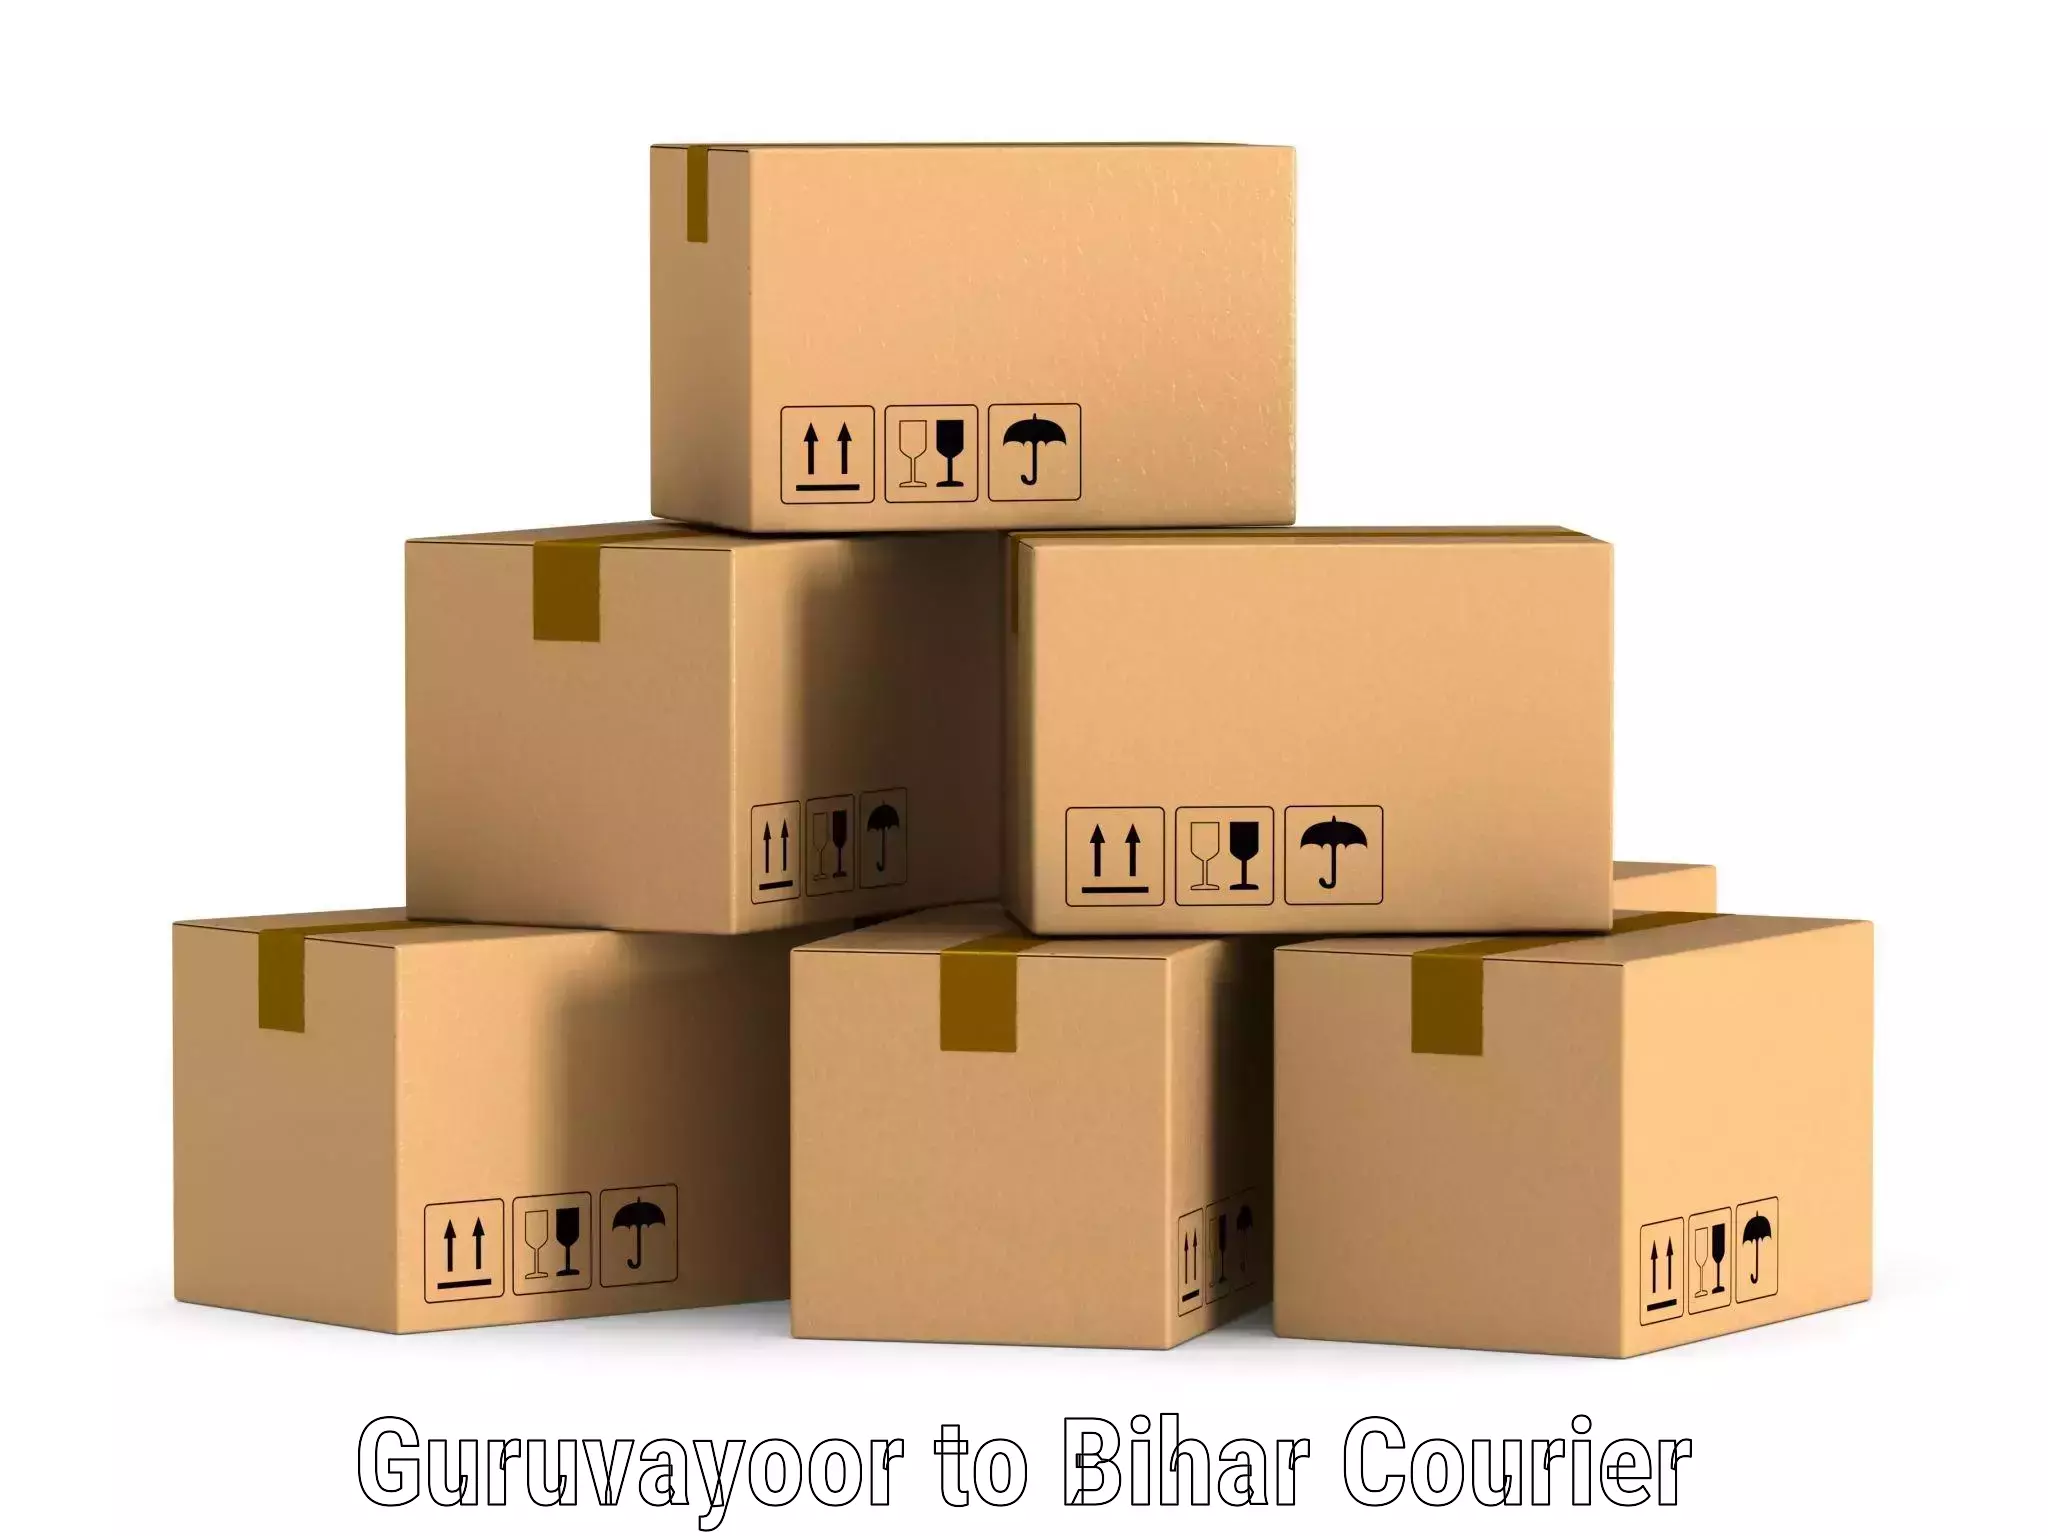 Cost-effective courier solutions Guruvayoor to Fatwah